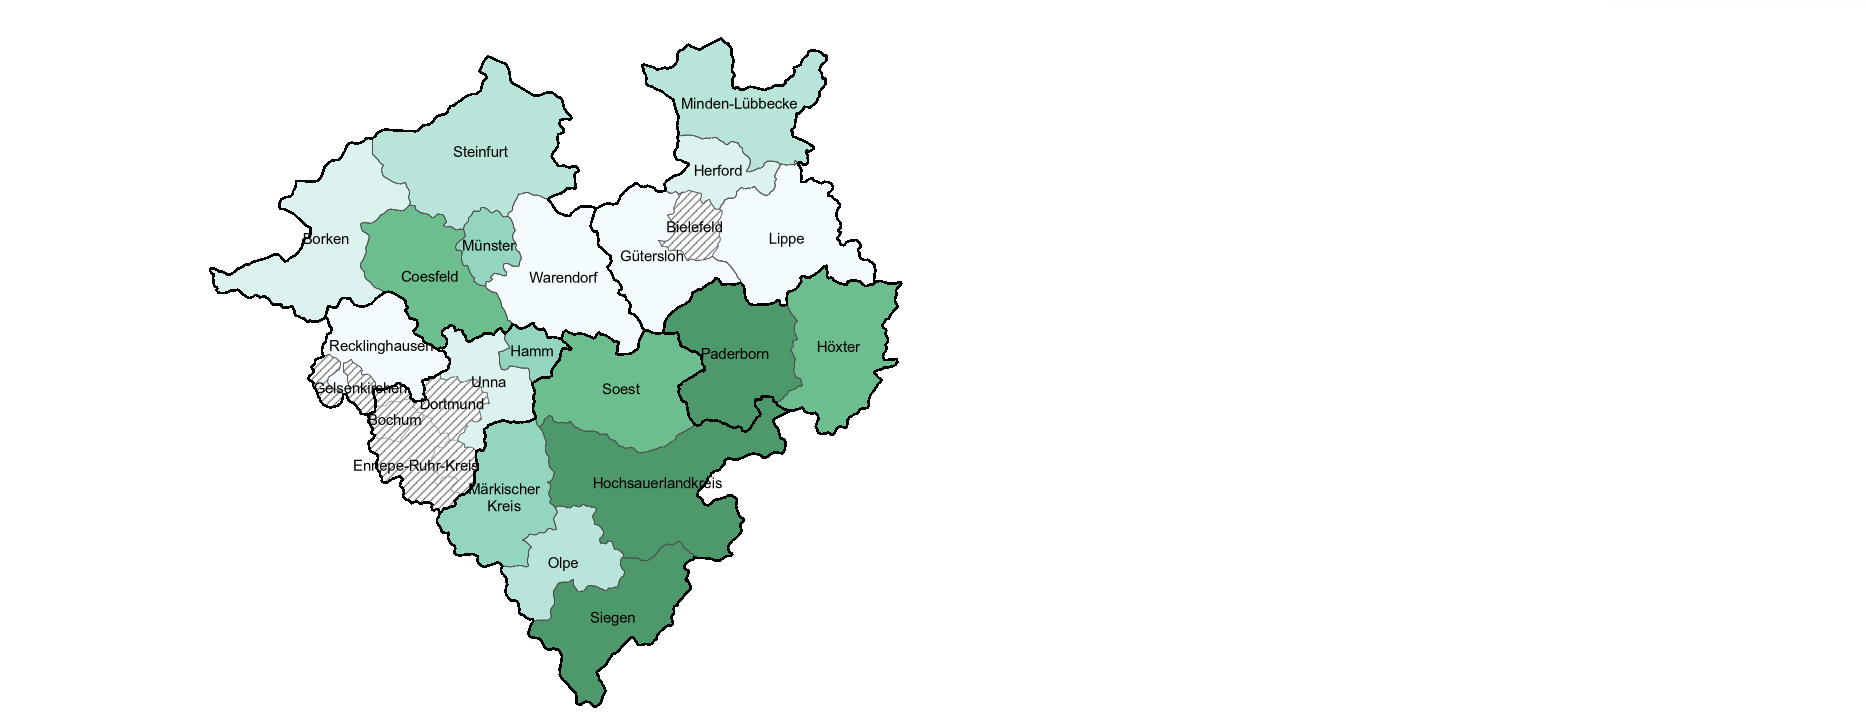 Karte zeigt den Anteil der Wildnisgebietsfläche an der Gesamtfläche Westfalens im Jahr 2022 auf Ebene der Kreise und kreisfreien Städte